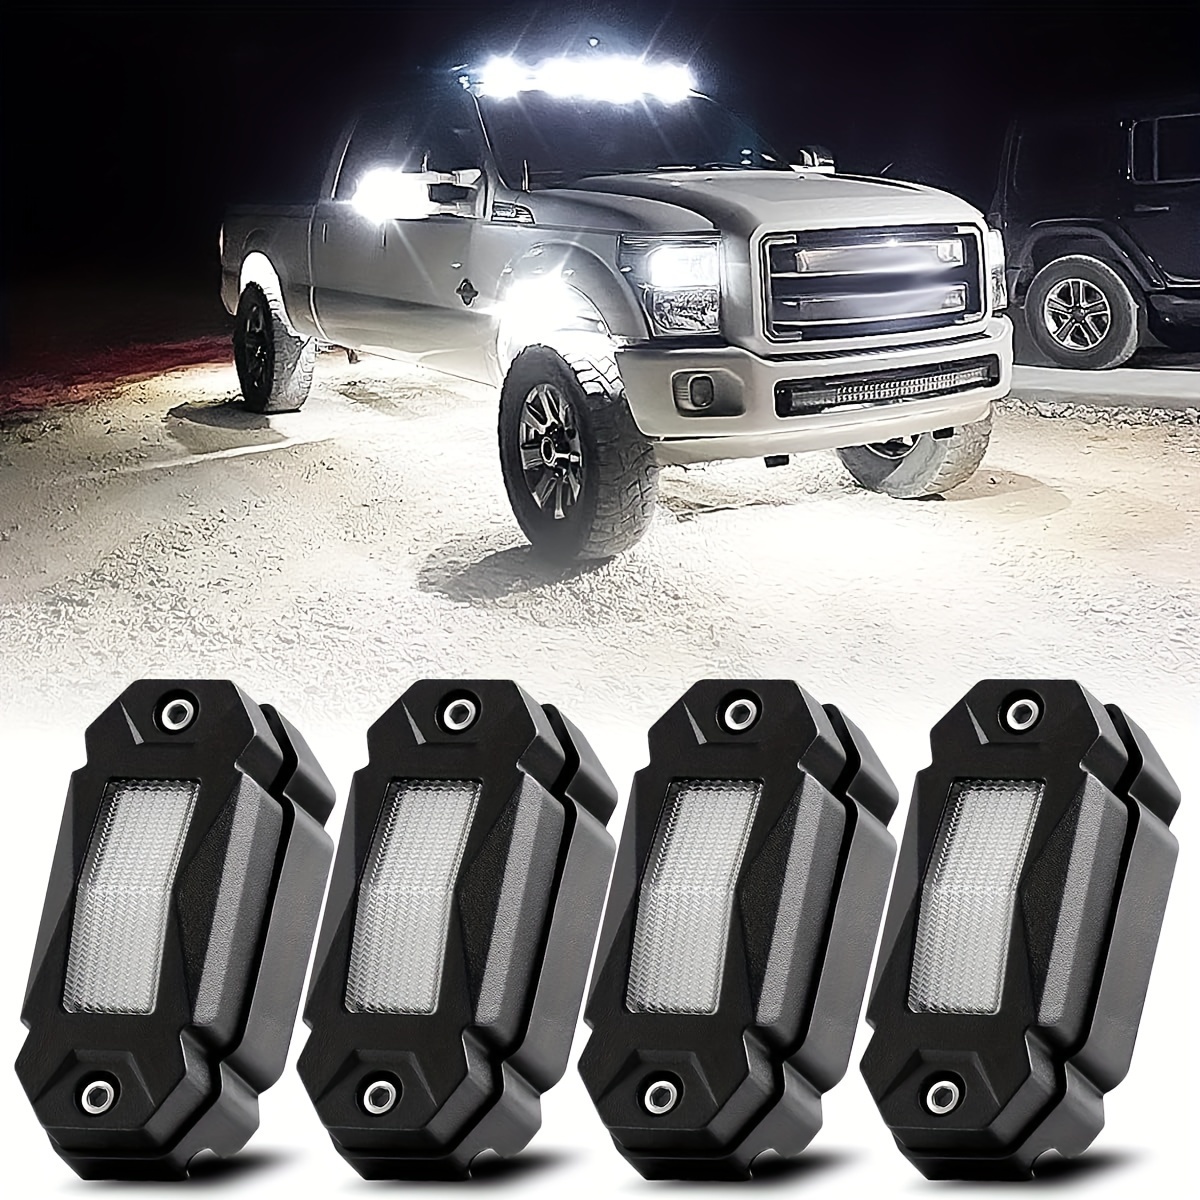 

4 projecteurs Lights haute puissance pour éclairage sous la voiture, LED blanc pur, pour Jeep, camions tout-terrain, RZR, bateau, VTT, éclairage sous la remorque TRAI, étanche